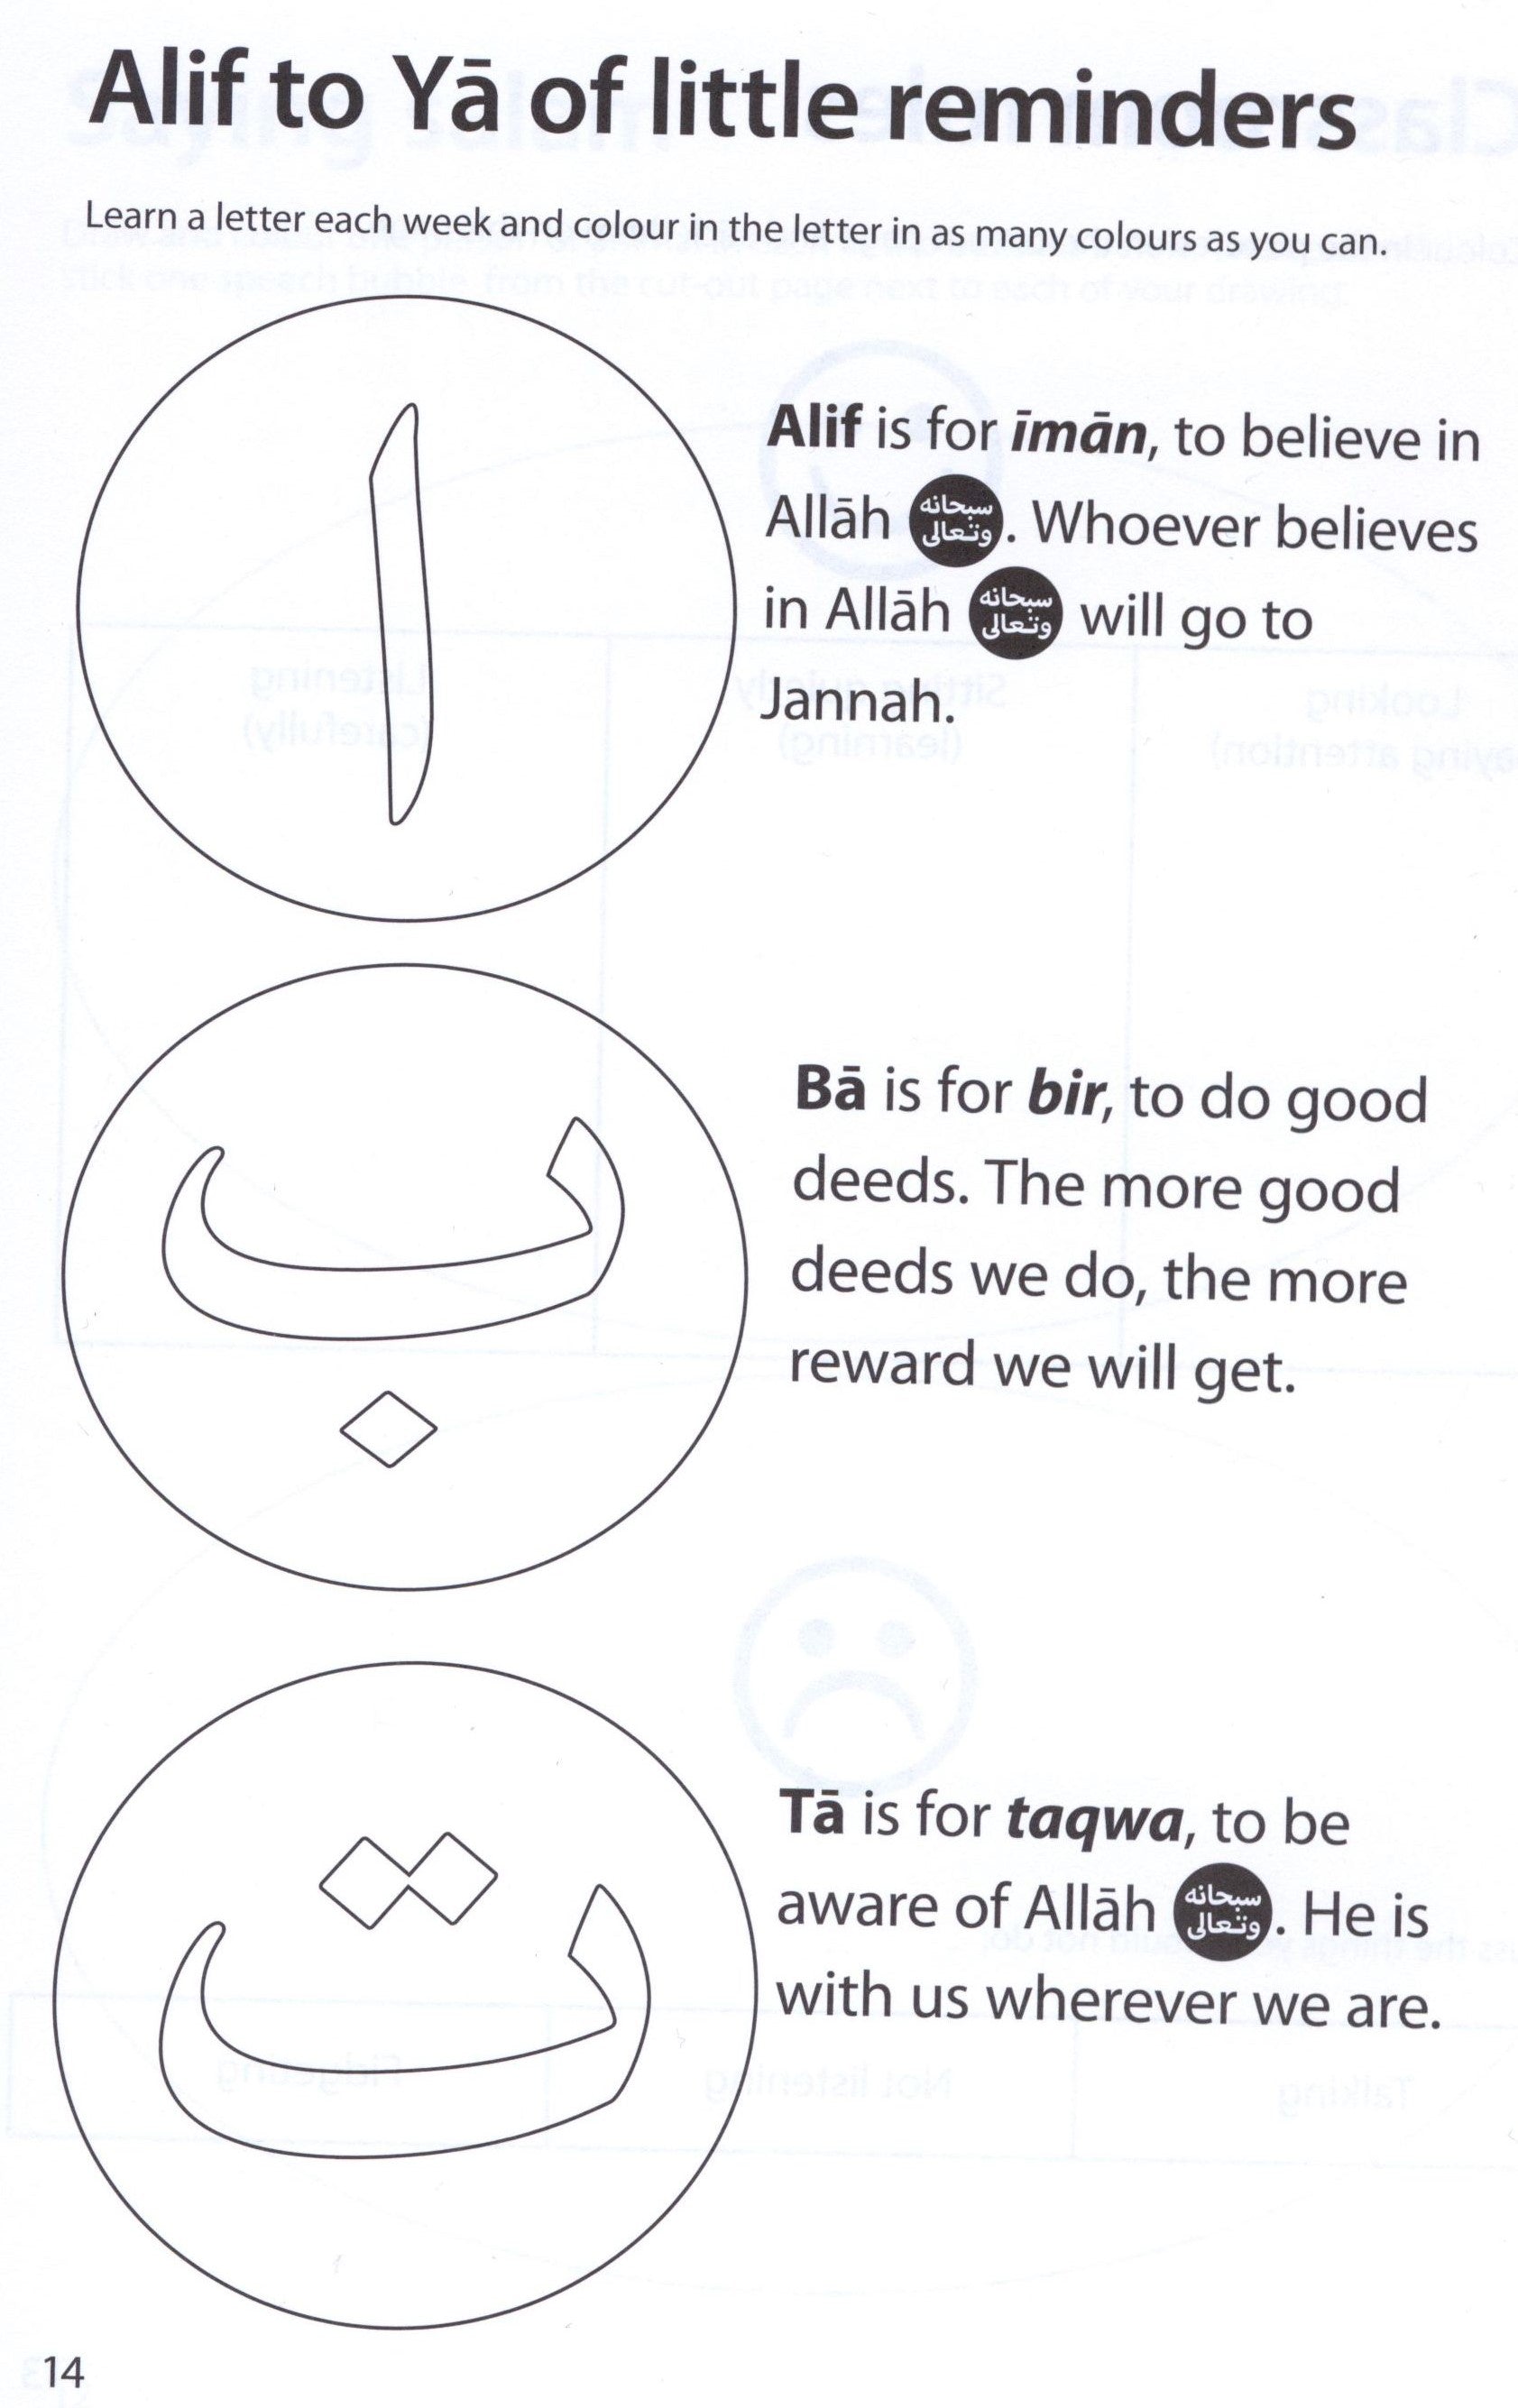 Safar Islamic Studies Workbook 1